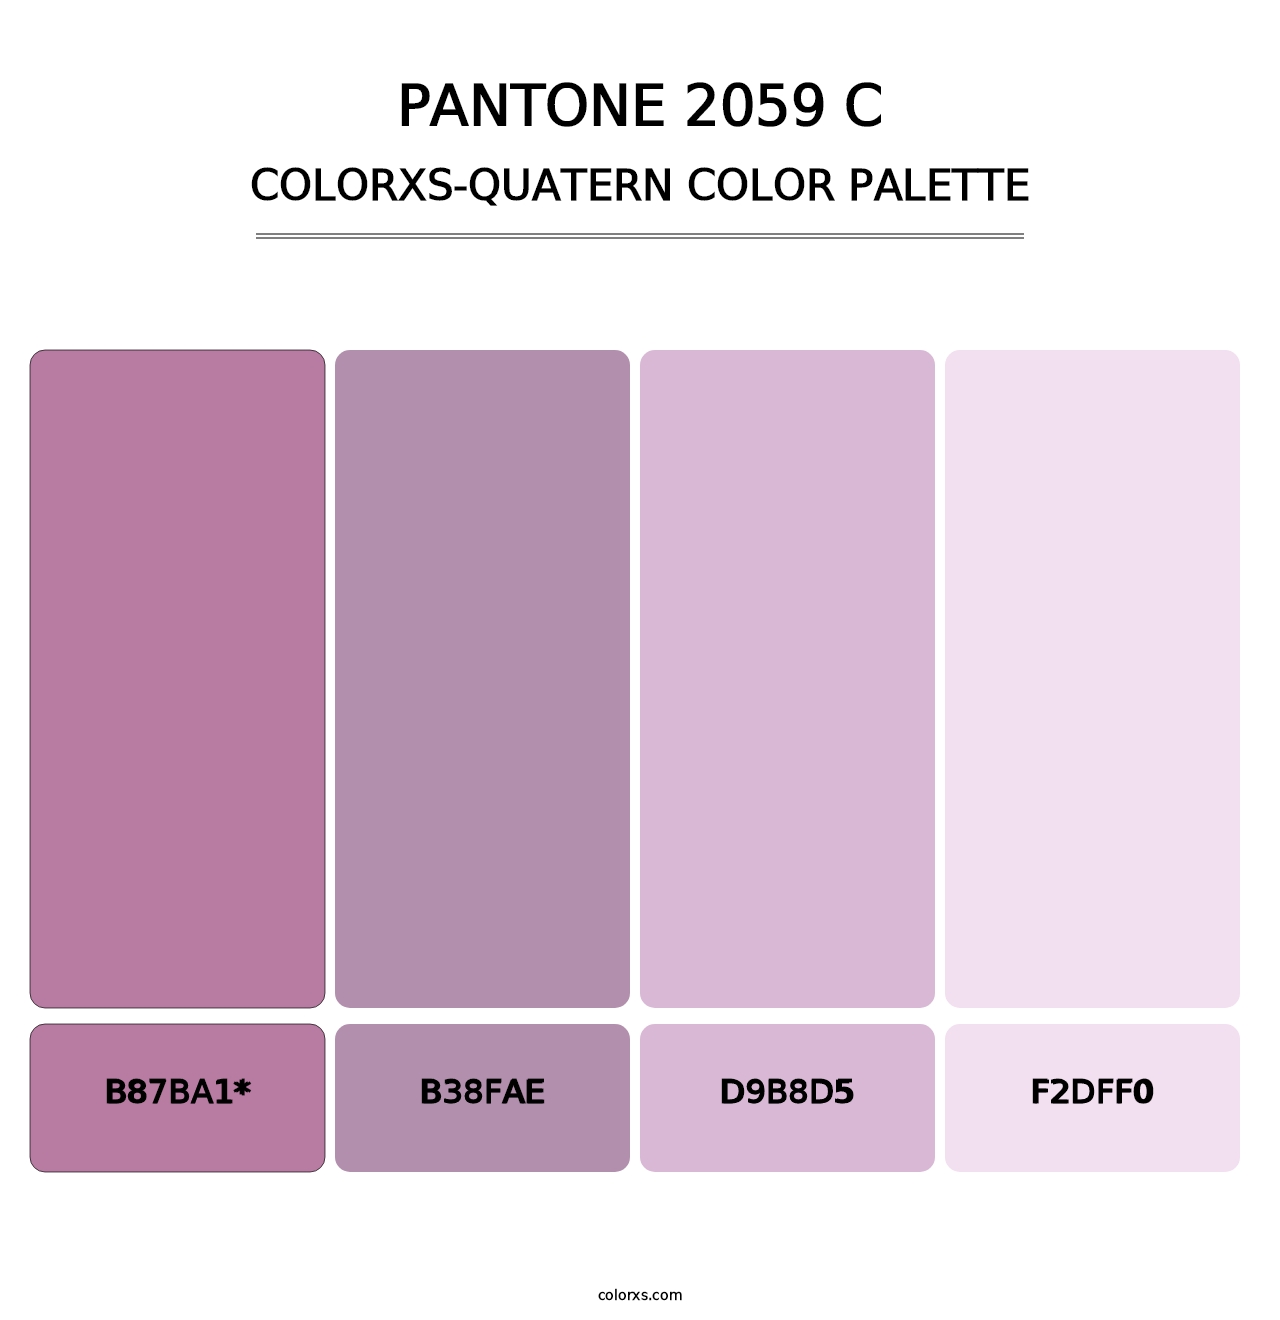 PANTONE 2059 C - Colorxs Quatern Palette